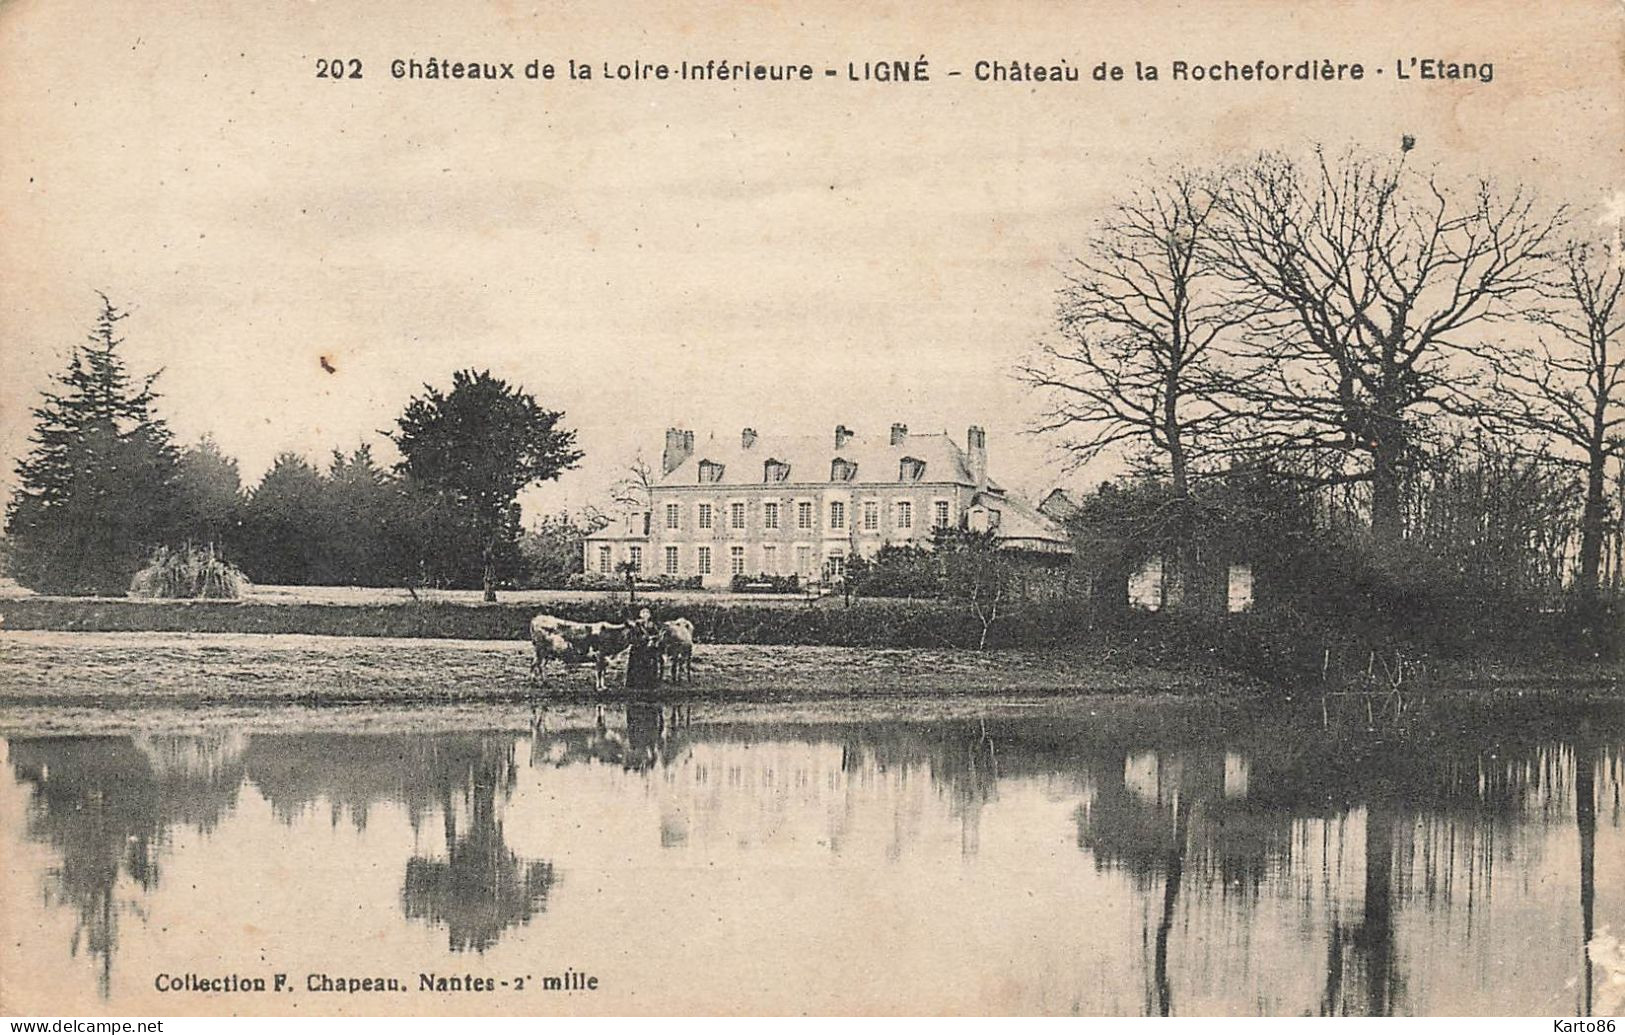 Ligné * Le Château De La Rochefordière * L'étang * Châteaux De La Loire Inférieure N°202 - Ligné